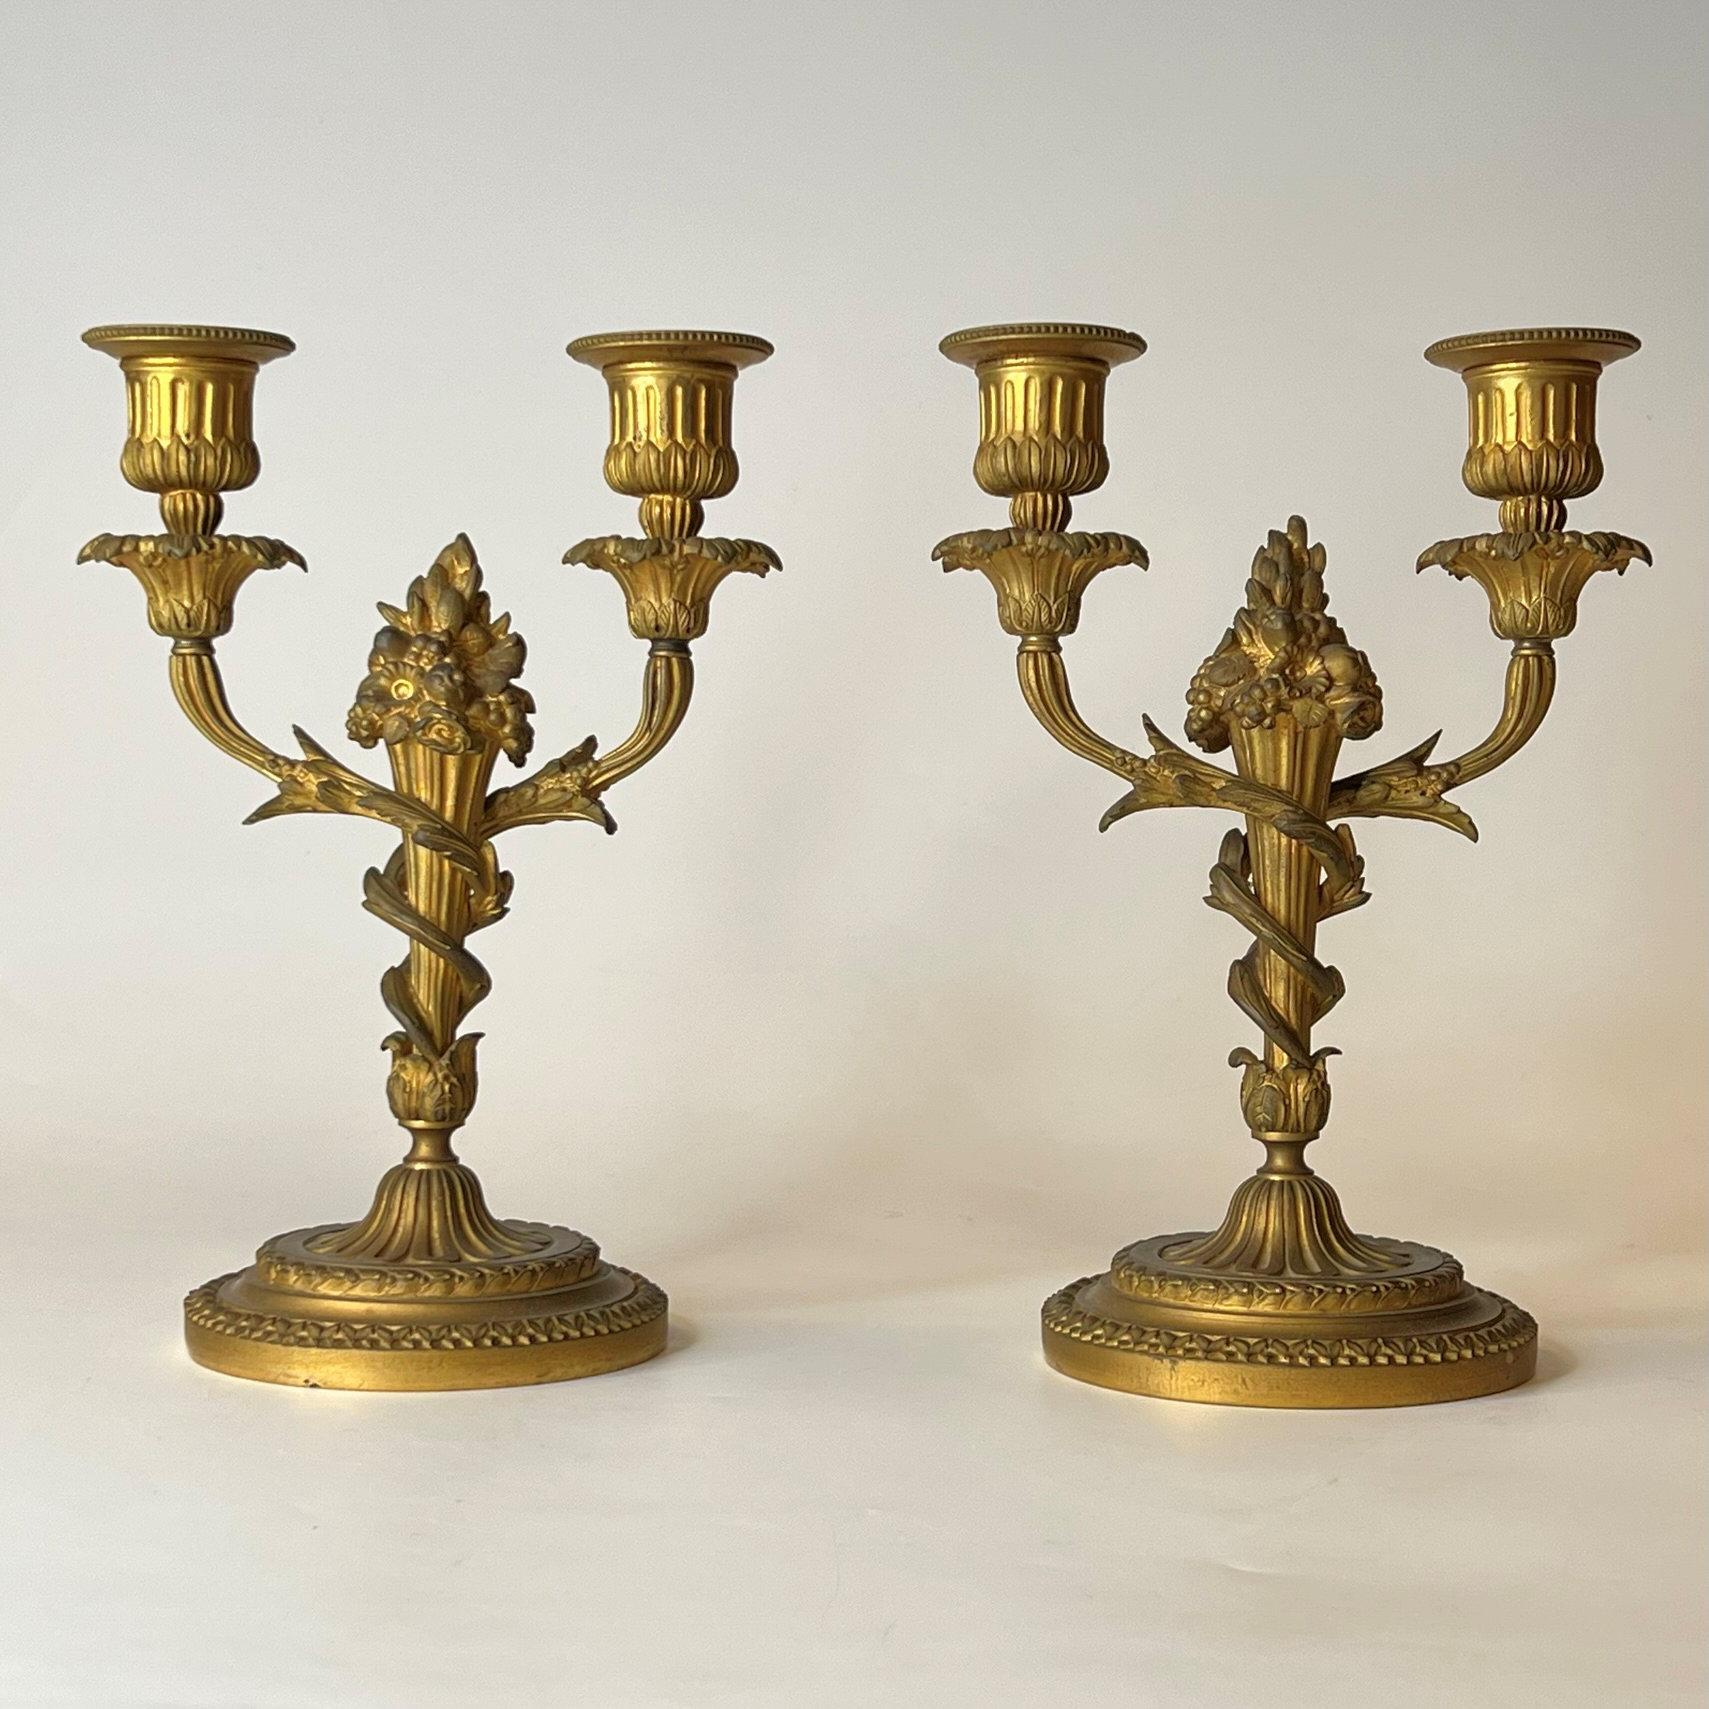 Paire de candélabres anciens (19e siècle) en bronze doré à deux lumières de style Louis XVI.